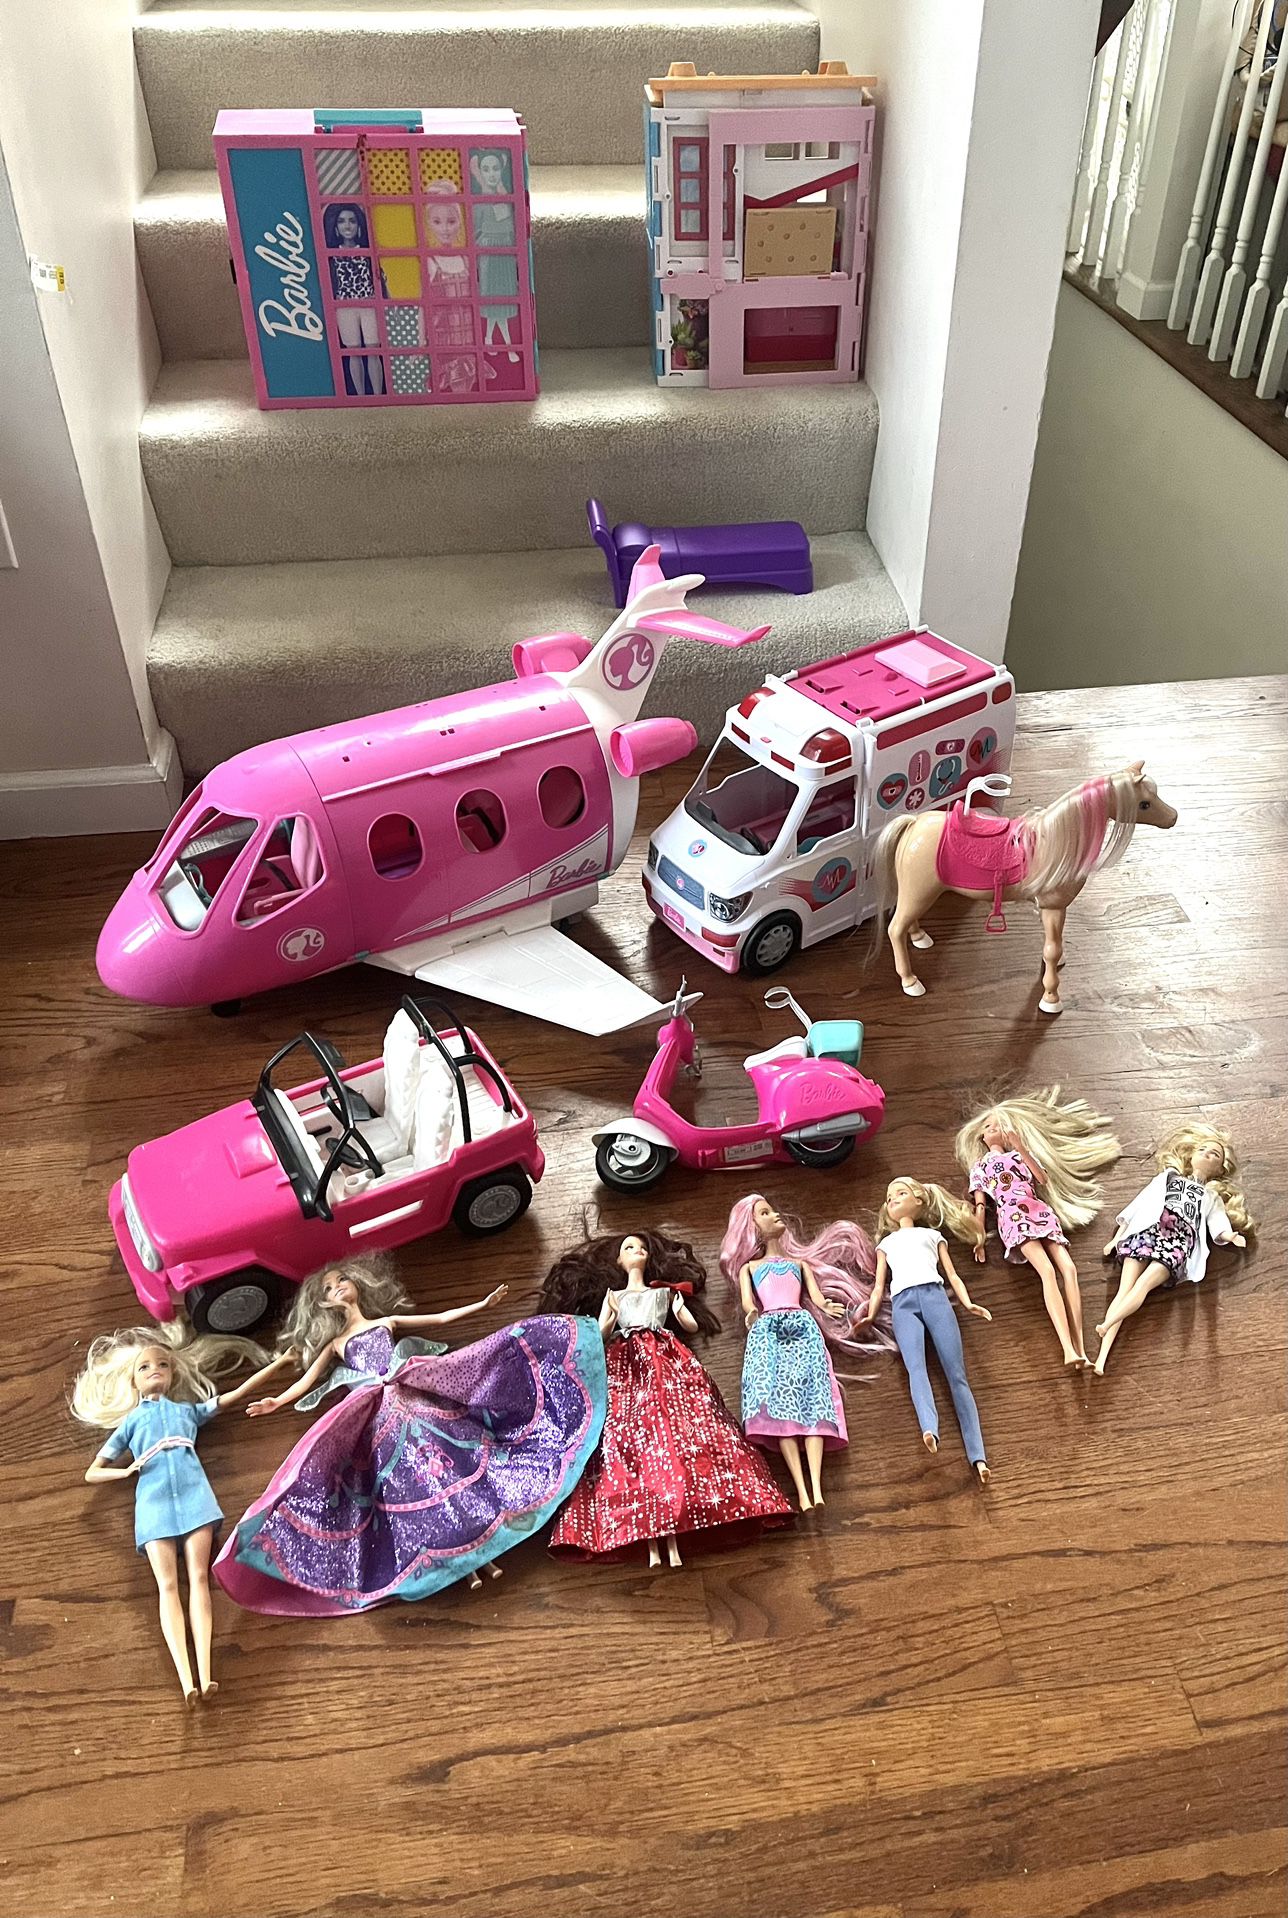 Huge Lot Of Barbie Doll Toys. Huge Airplane, Ambulance, House, Dresser, Shimmer Dancing Horse, Car, Scooter, Dolls & More! ($95 For All)